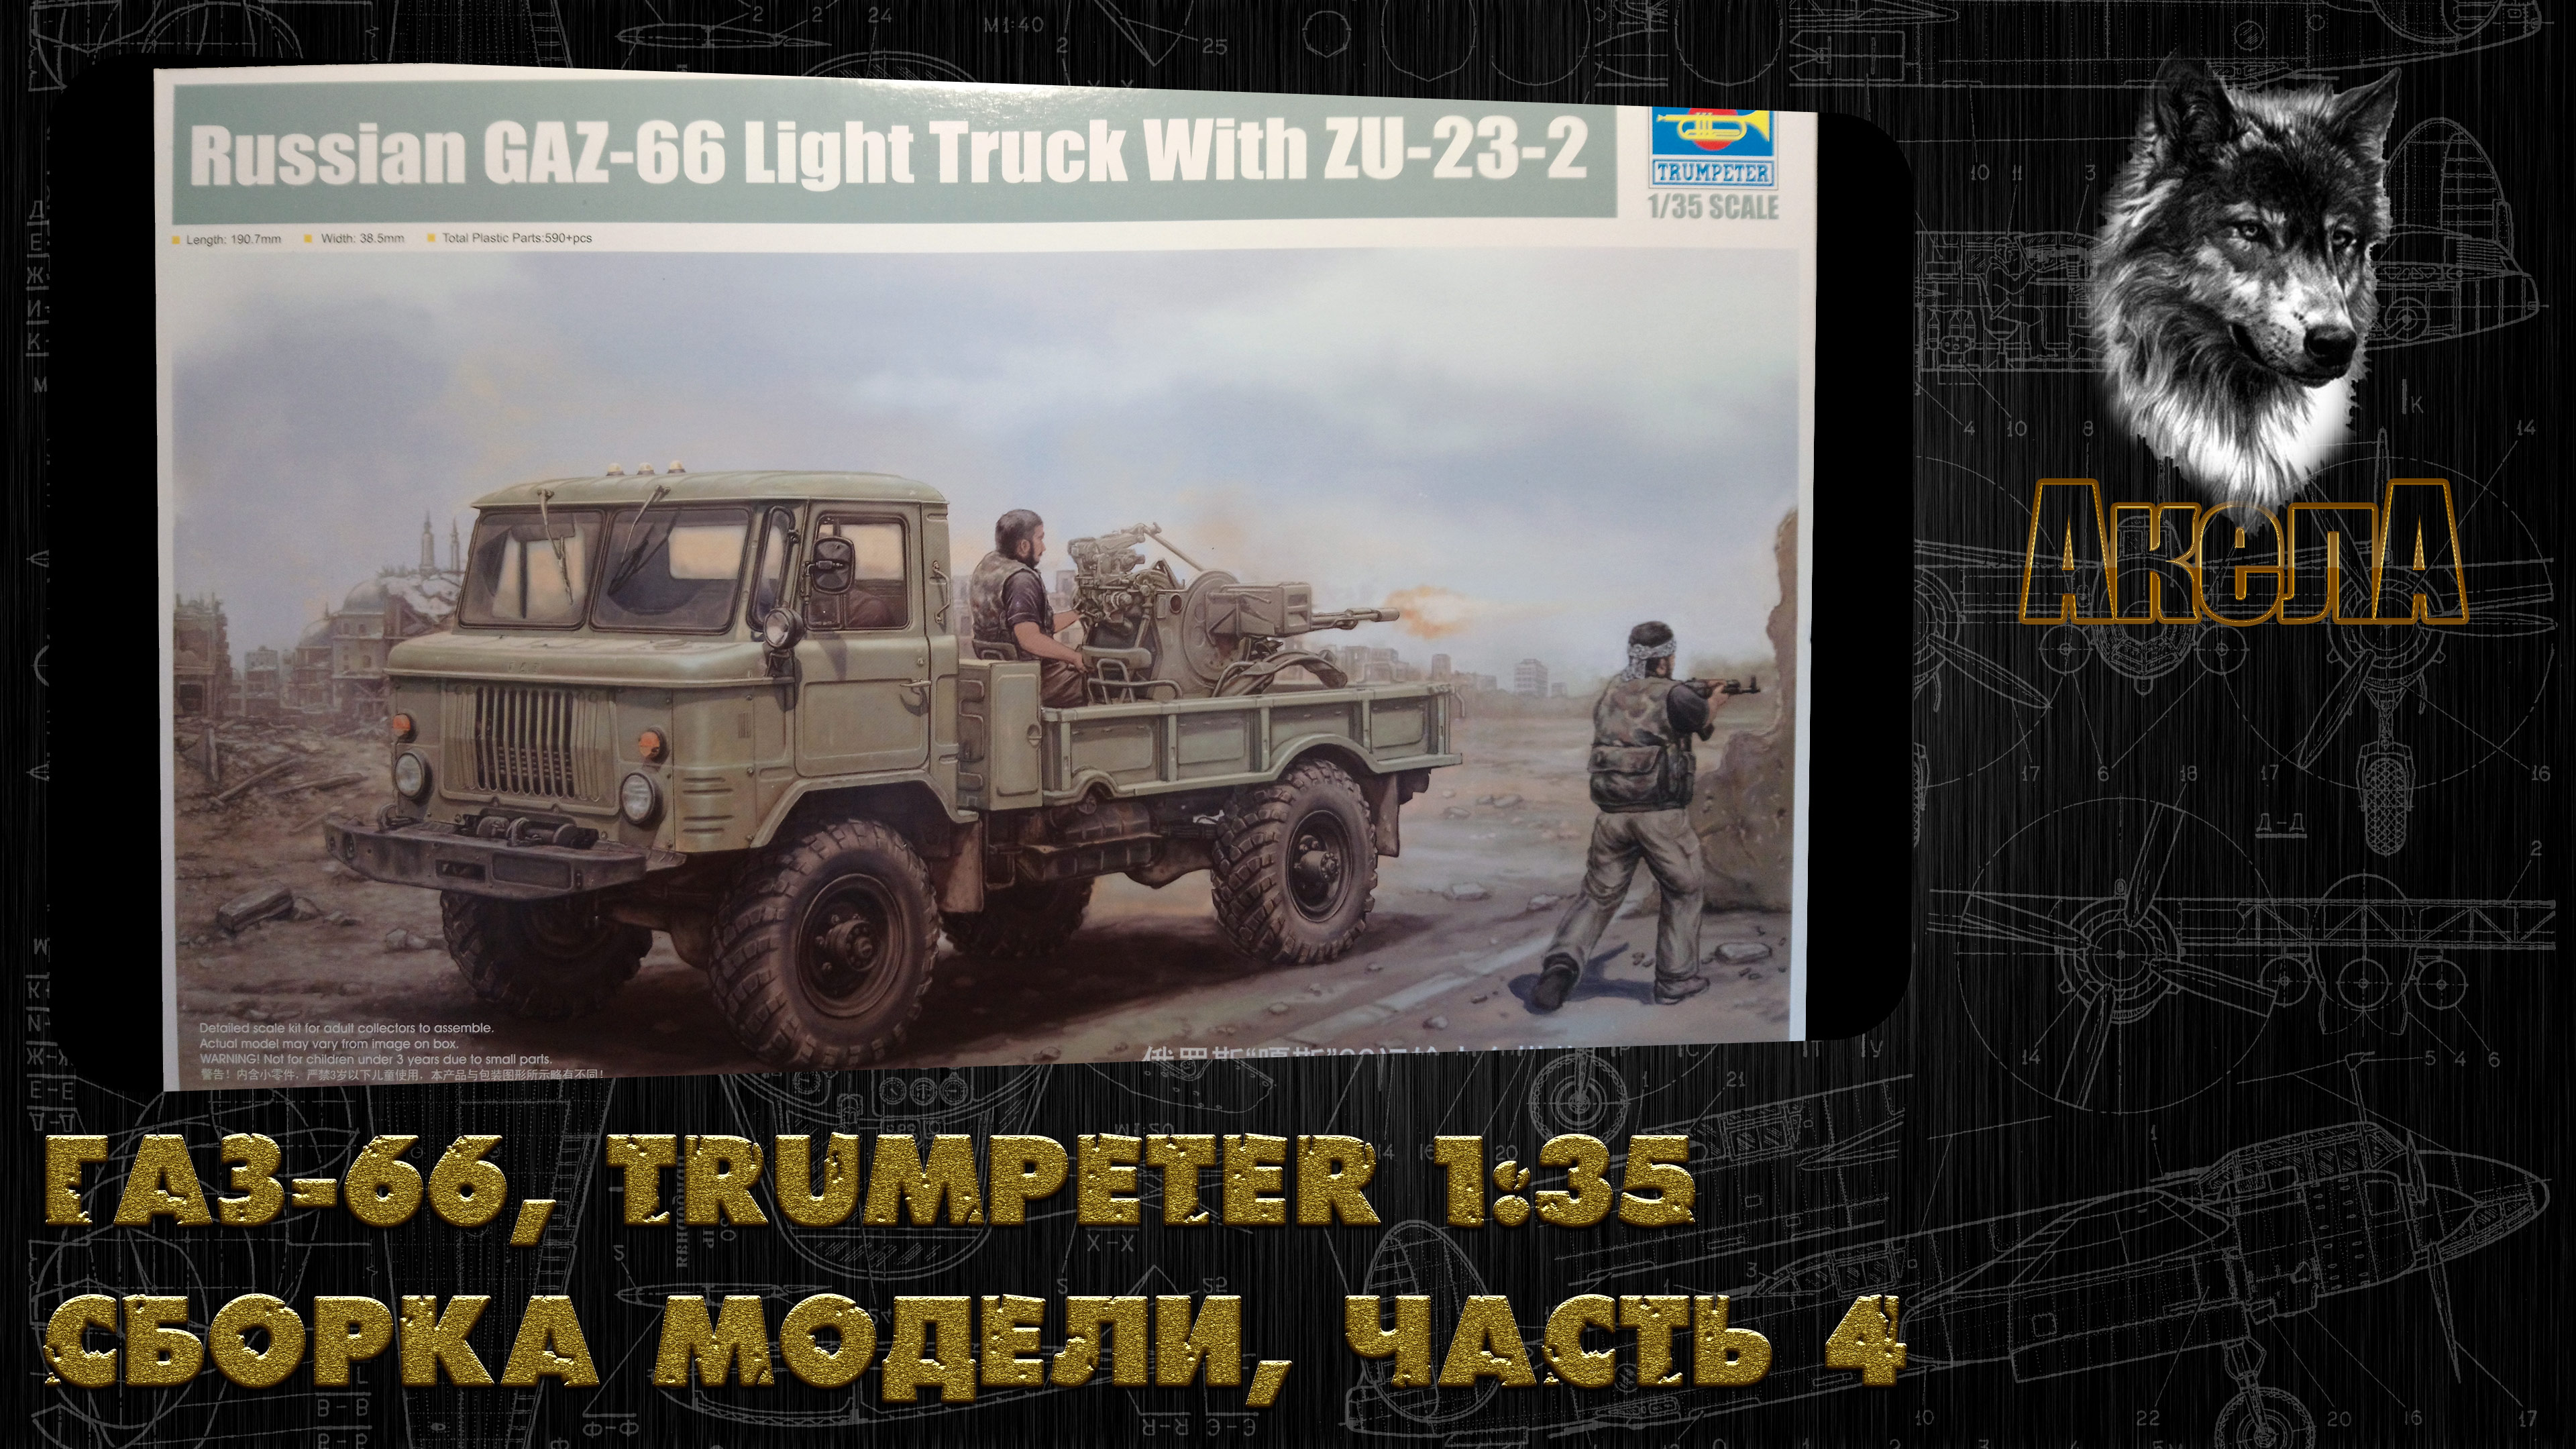 ГАЗ-66 с ЗУ-23-2, Trumpeter 1/35, сборка модели, часть 4